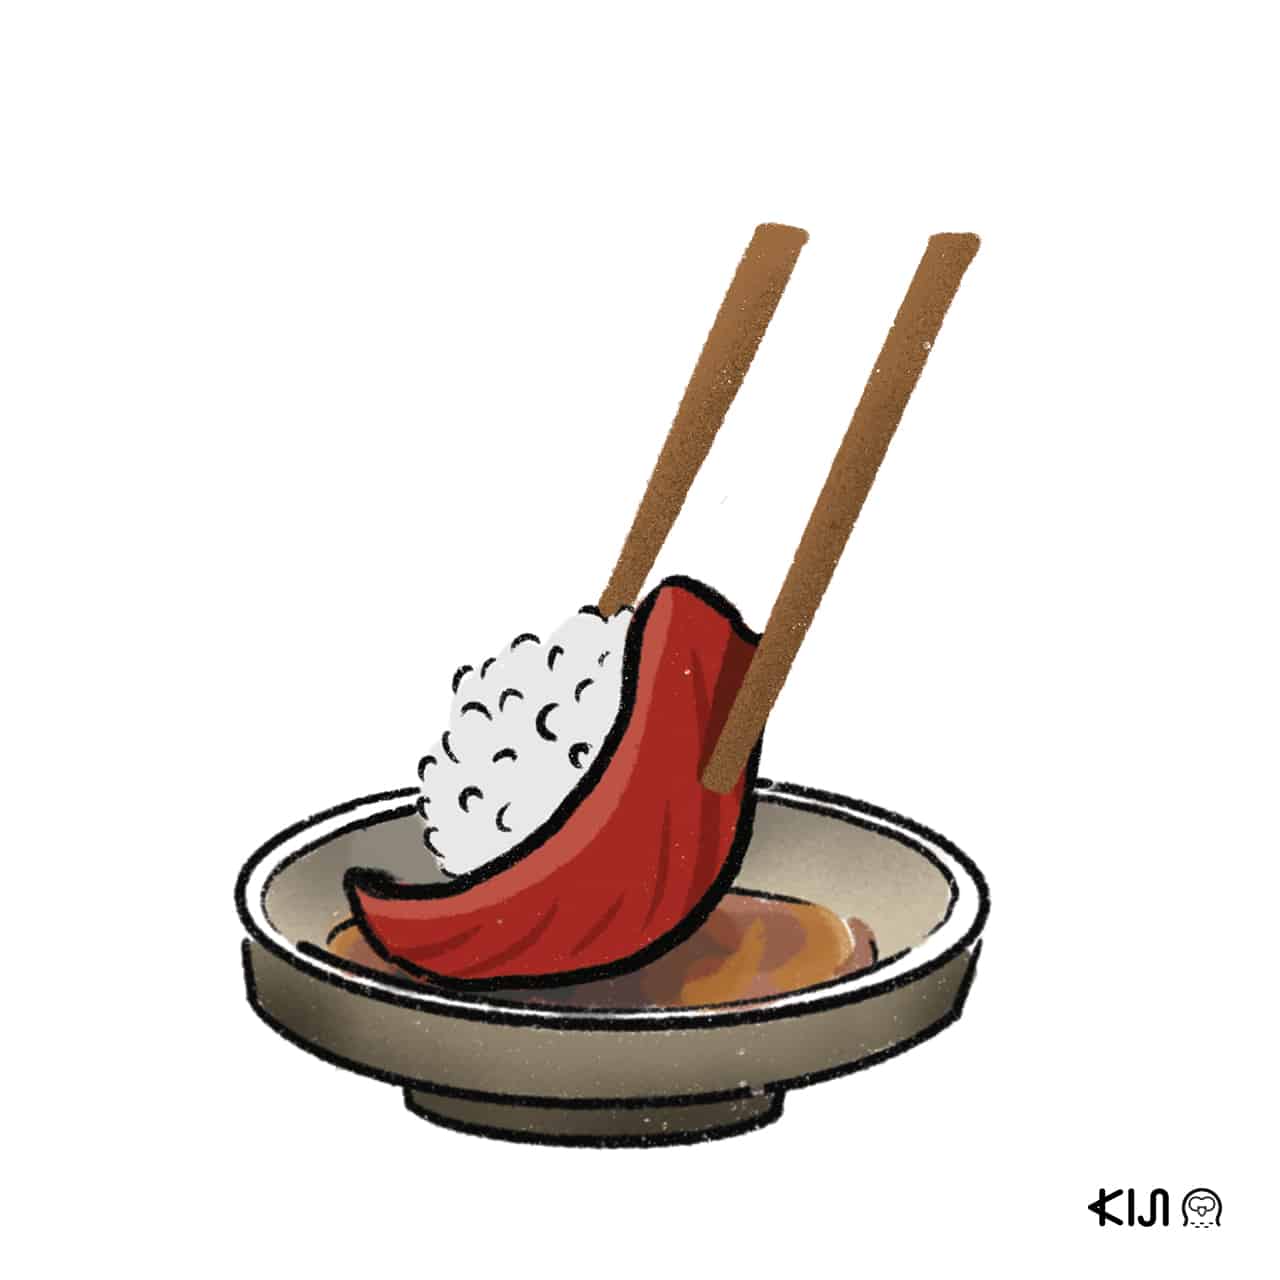 sushi kiji - ควรจิ้มโชยุยังไง